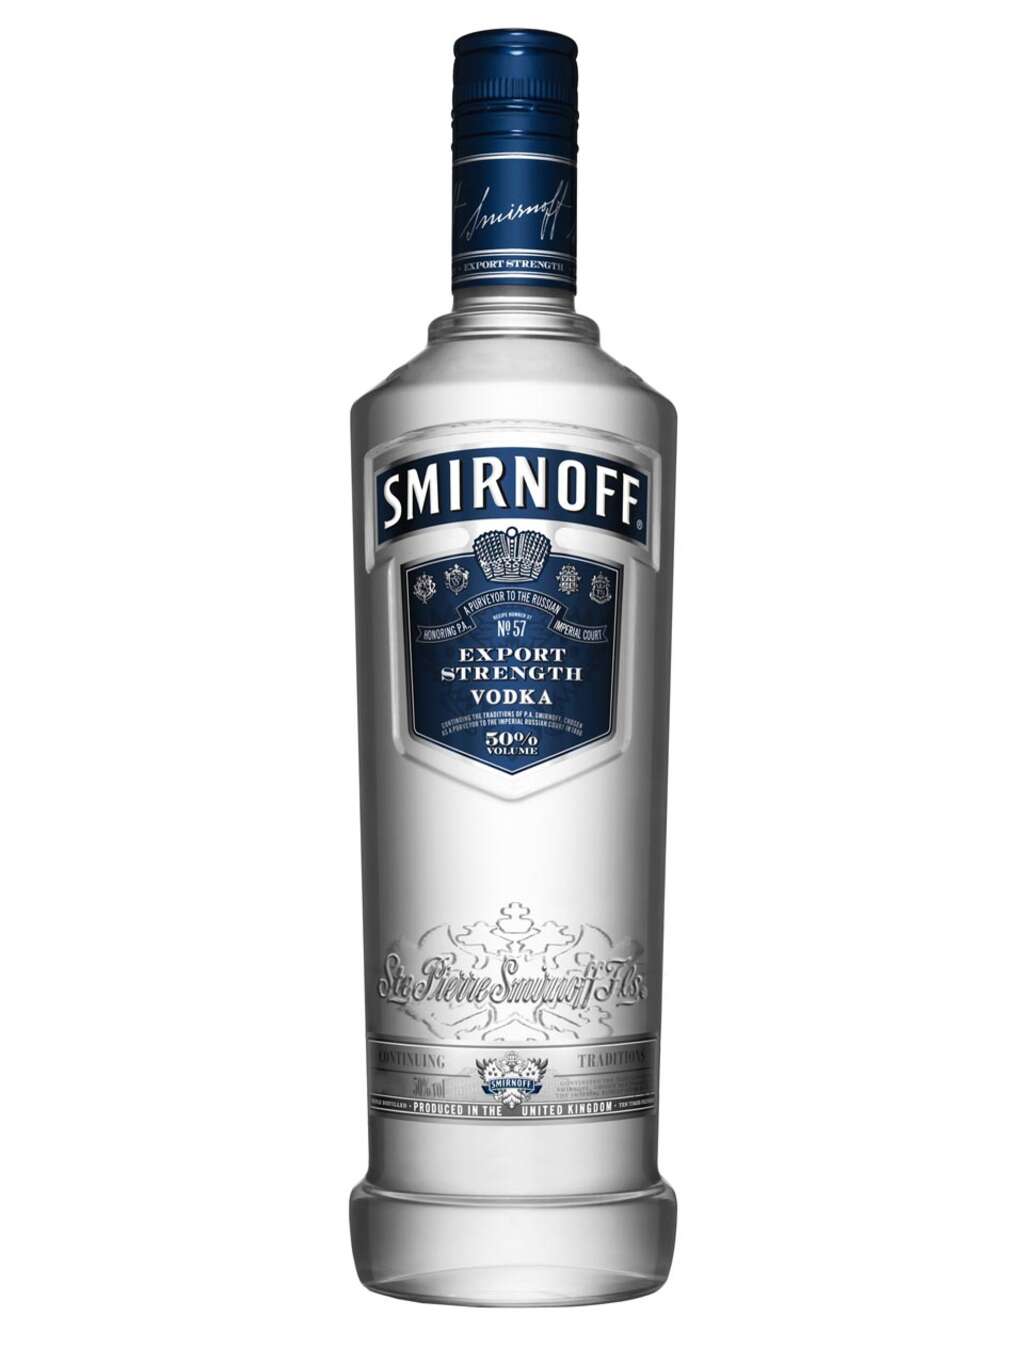 Smirnoff Blue Vodka